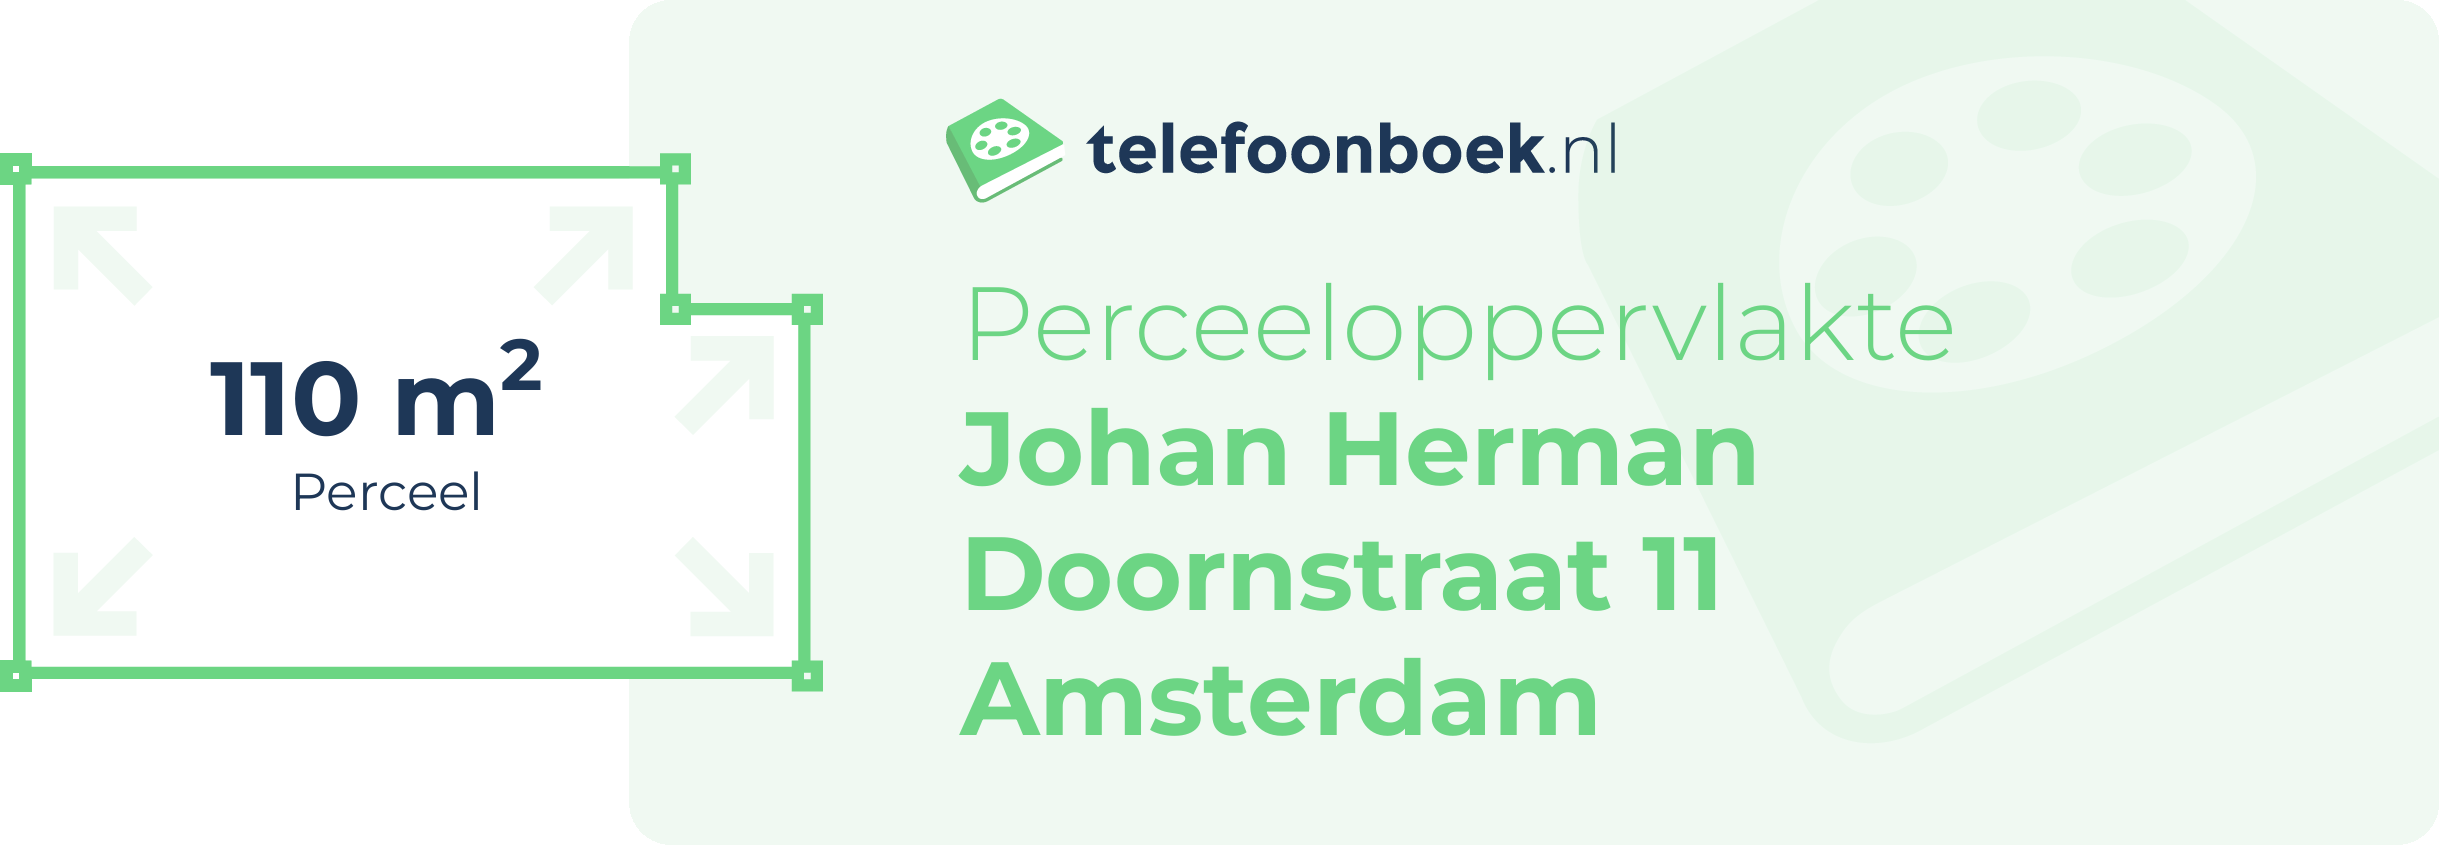 Perceeloppervlakte Johan Herman Doornstraat 11 Amsterdam